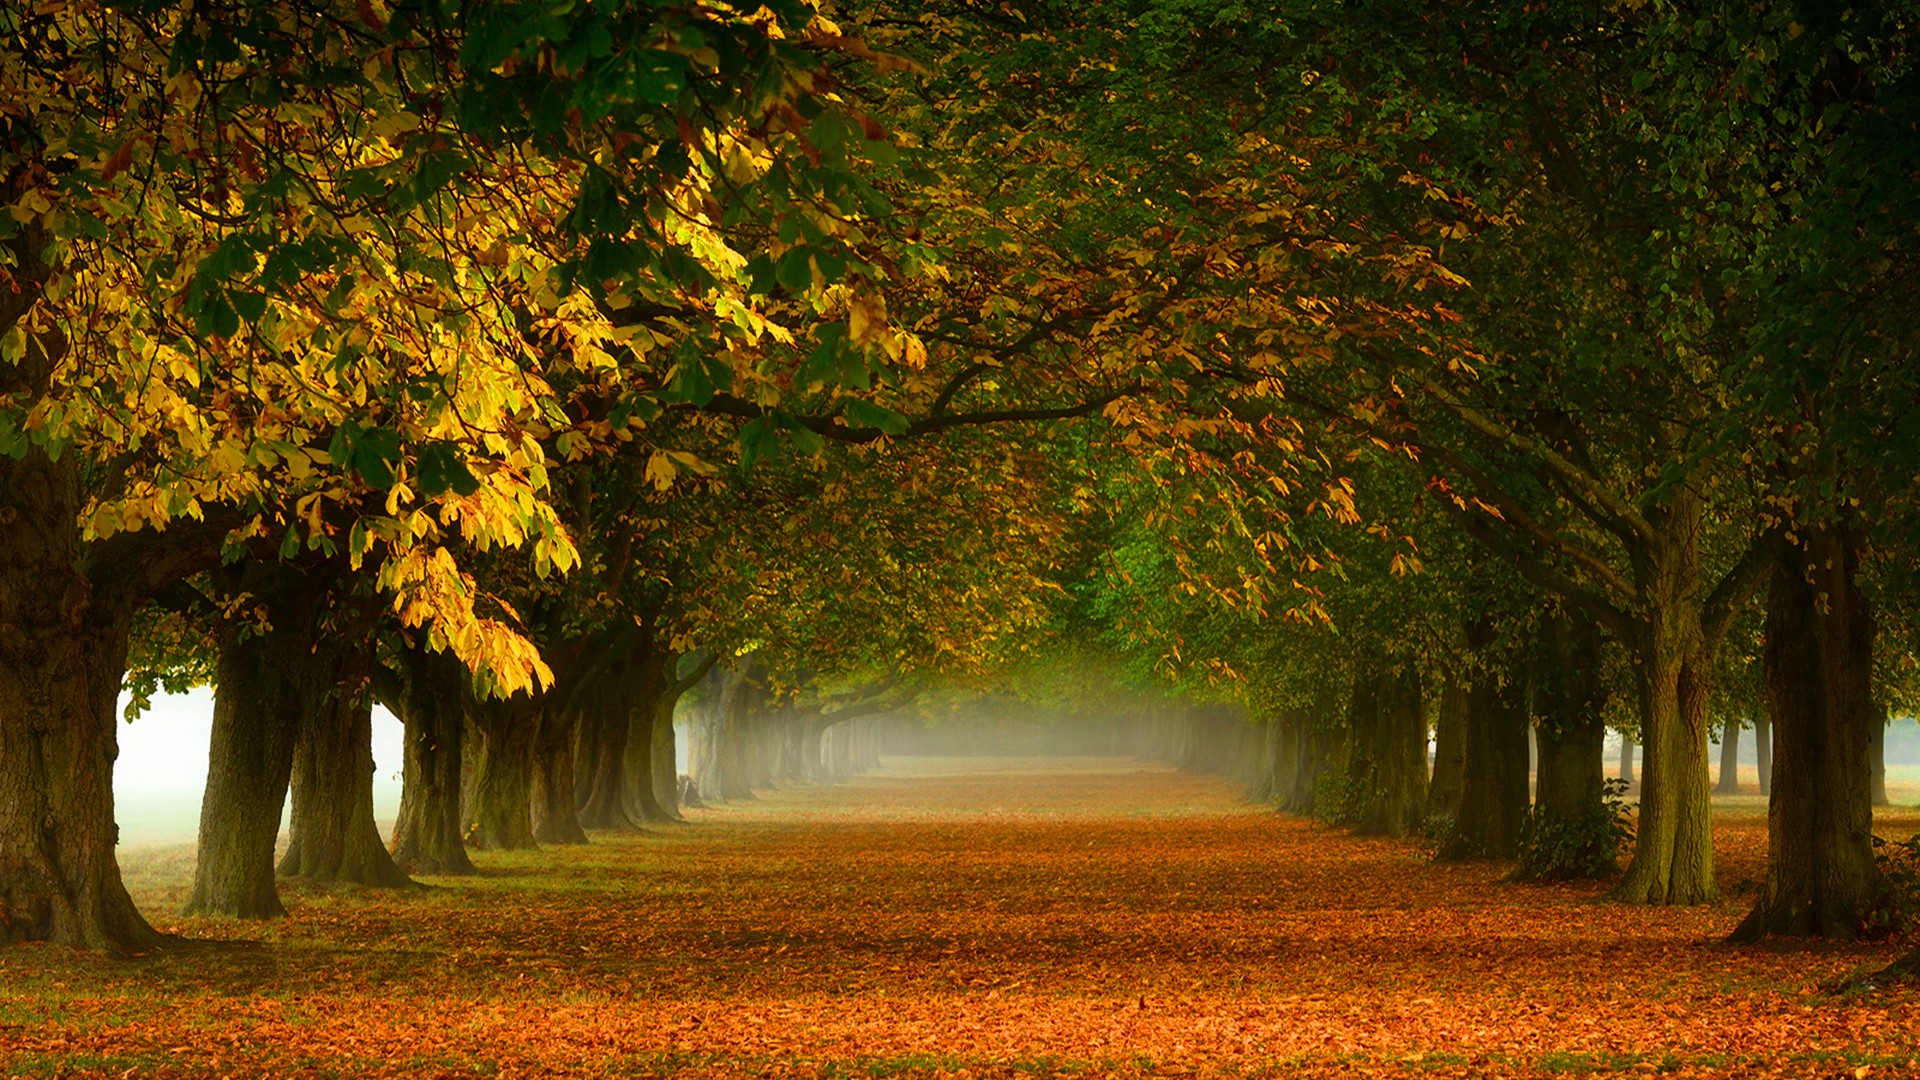 秋天,树林,落叶,胡同,拱形,小路,自然美丽风景桌面壁纸